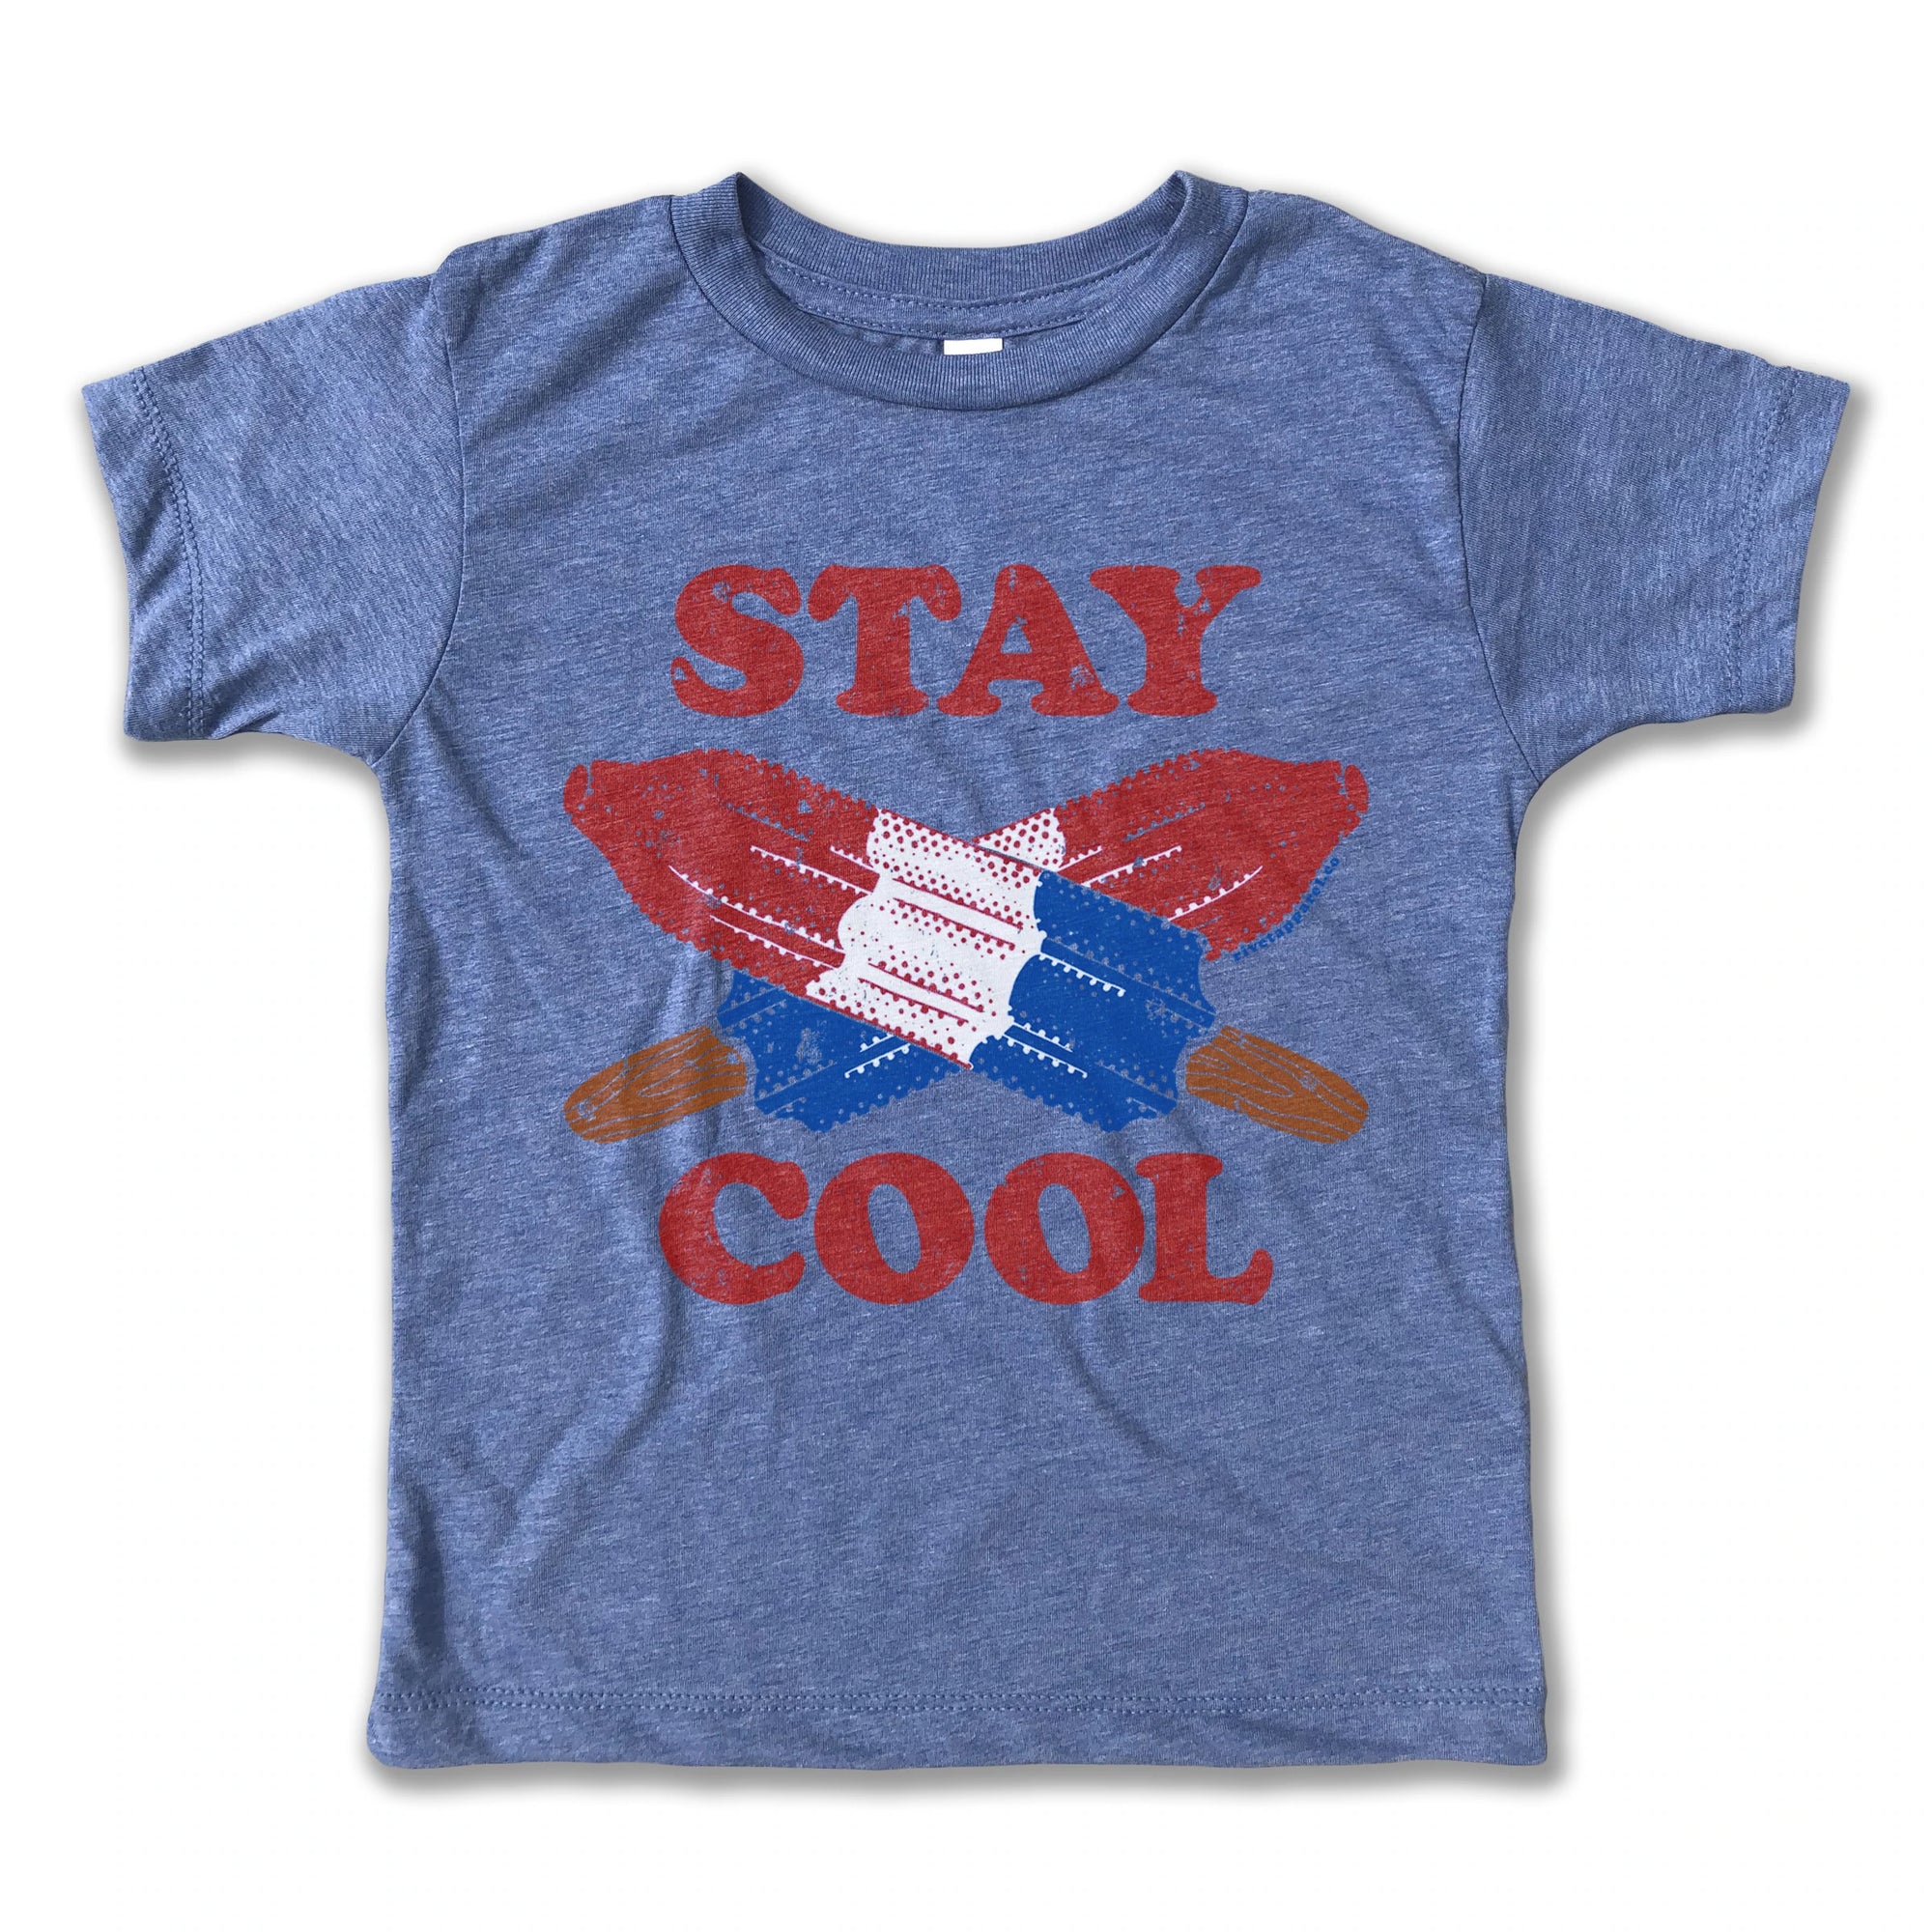 Stay Cool Tee